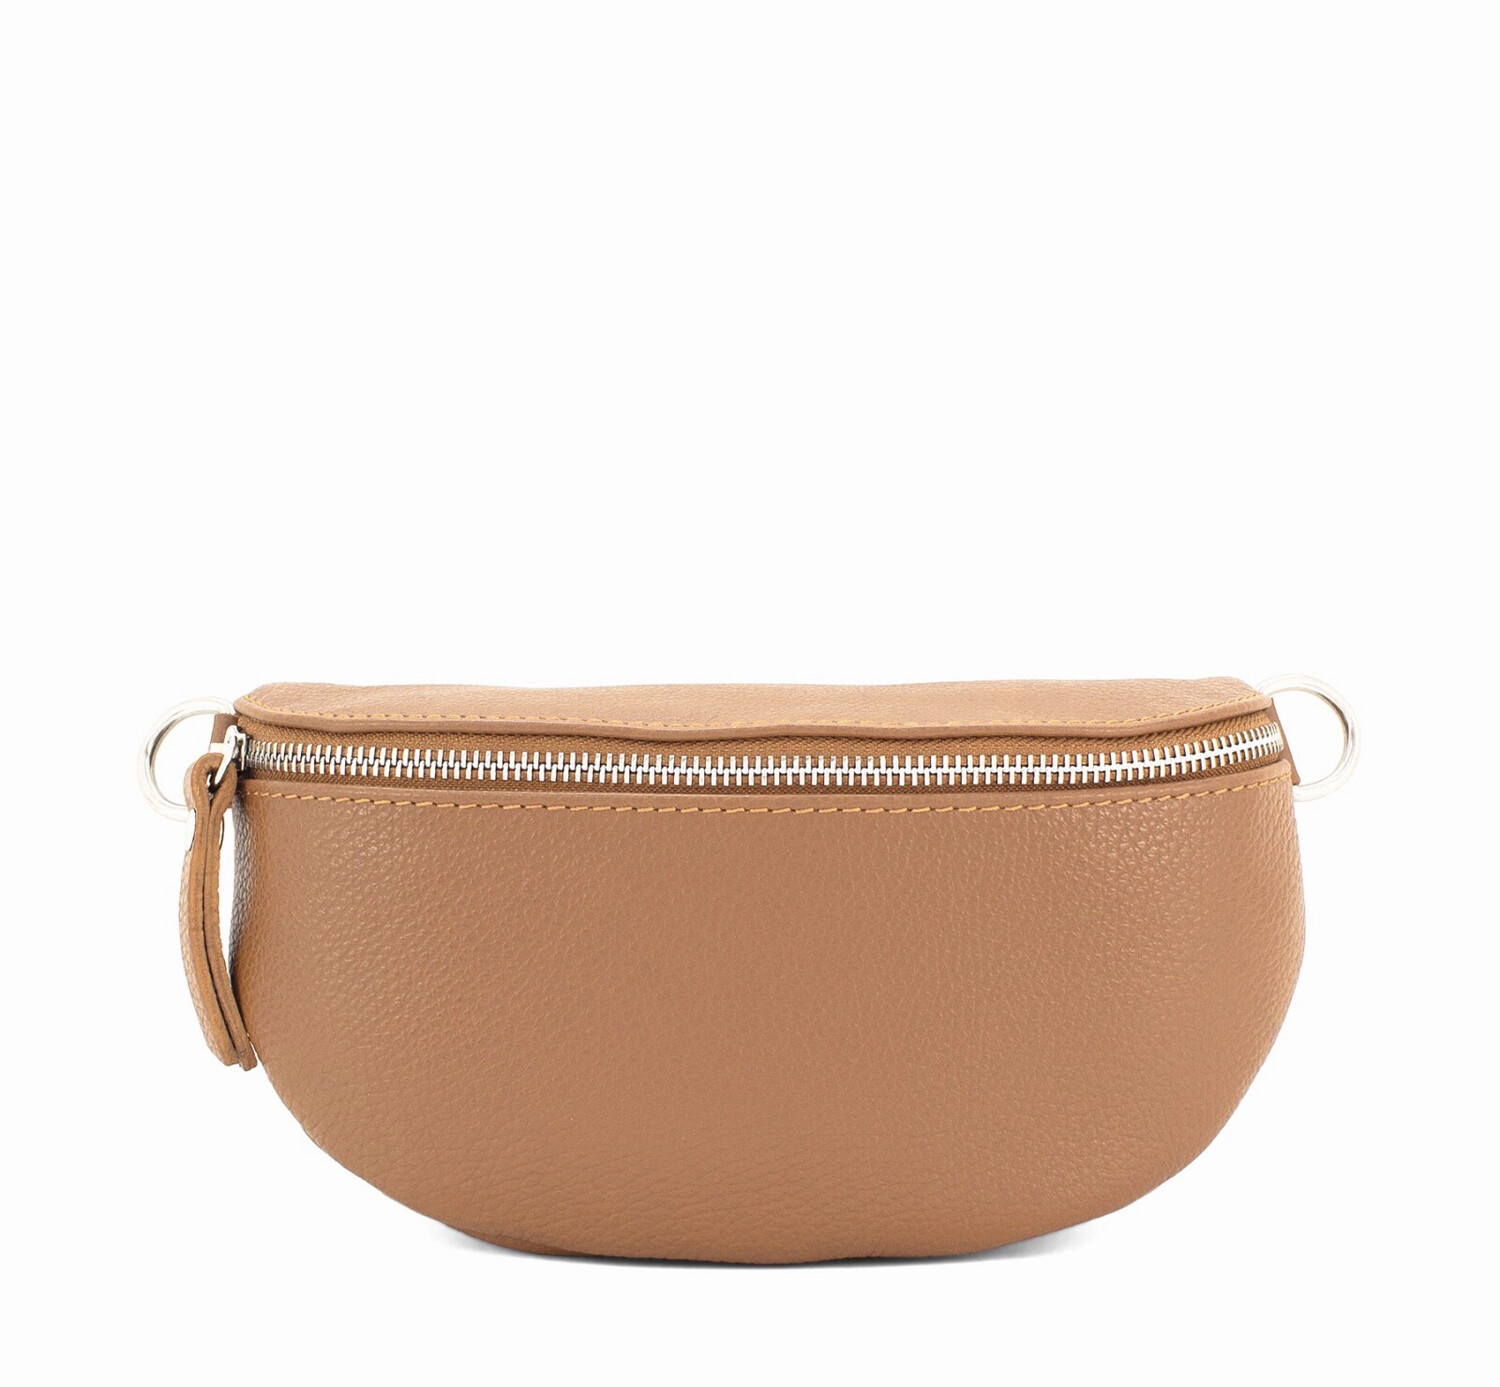 Tan Leather “Bum Bag”